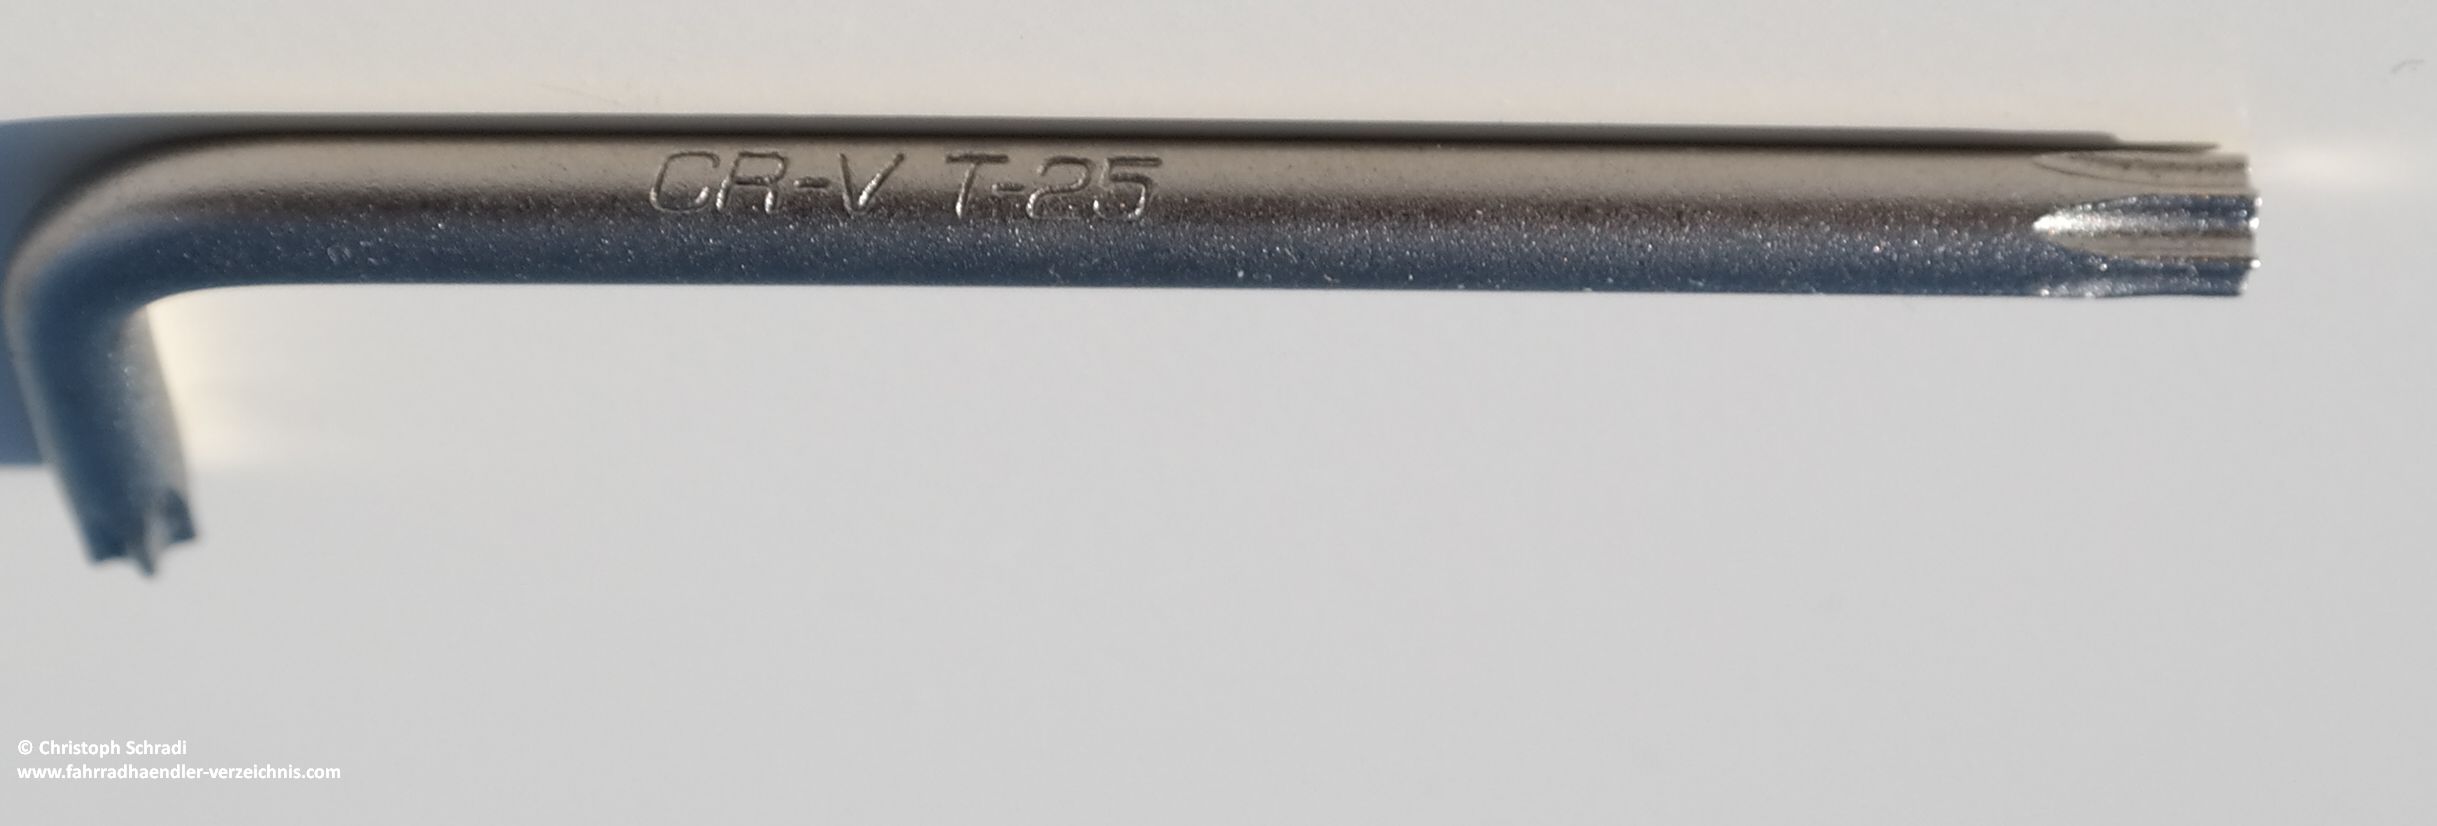 Torx-Schlüssel in L-Form von Rose Versand mit T25 Aufnahme